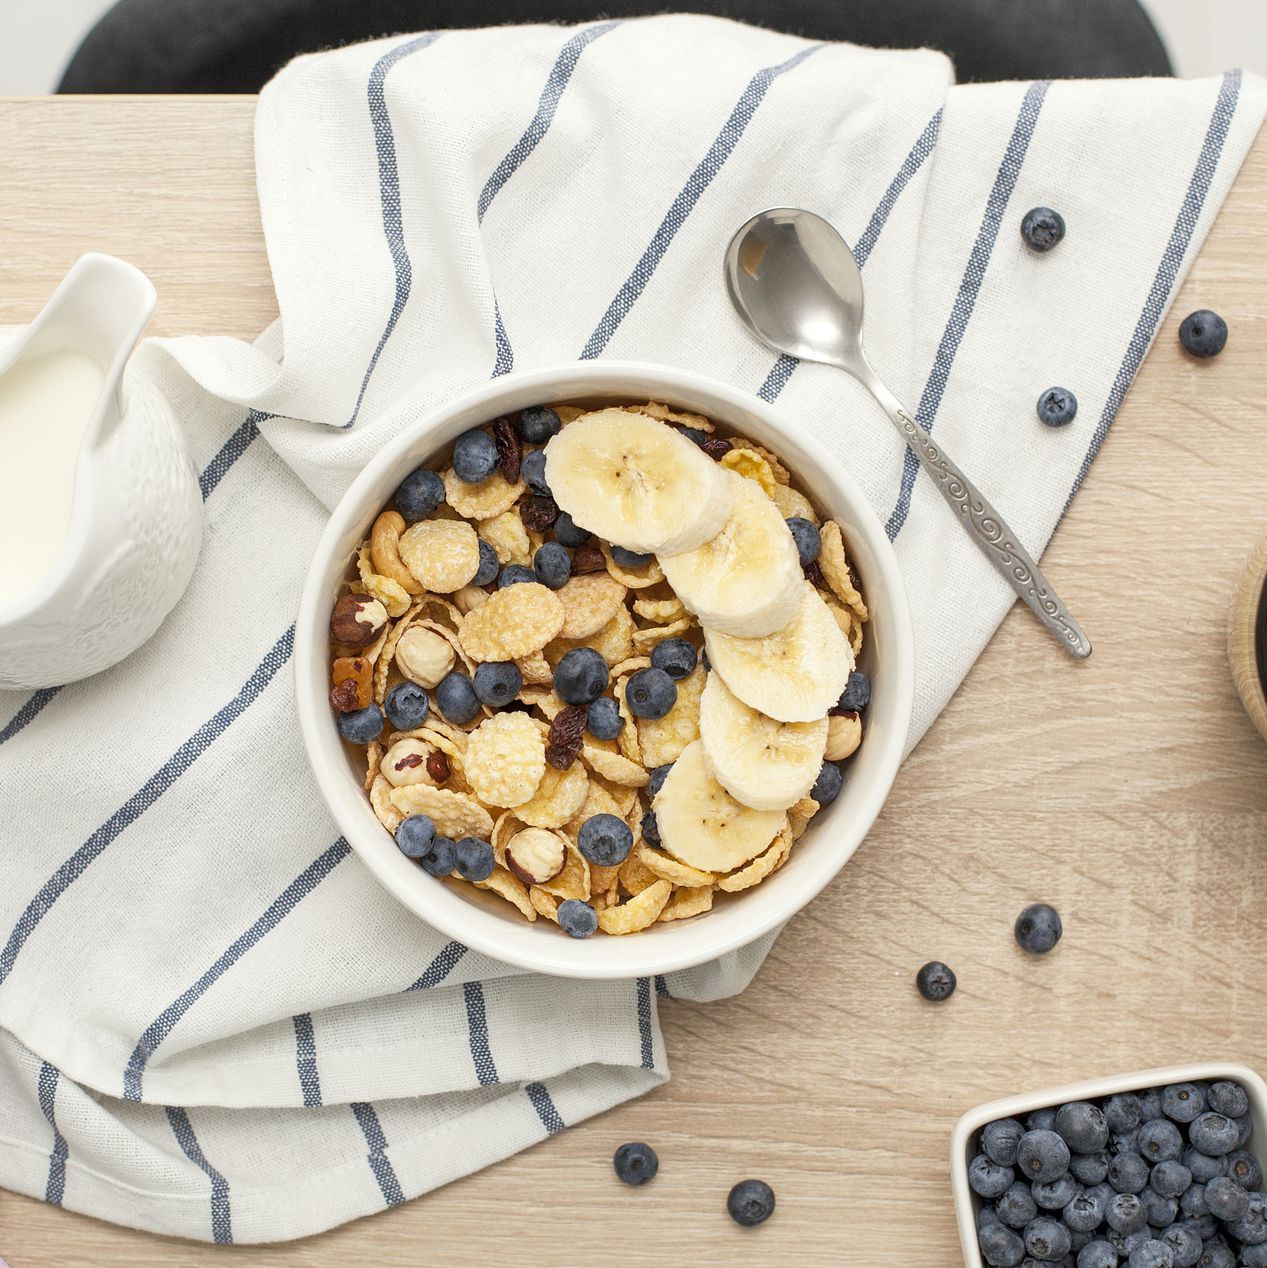 Desayunos Cereales Nestlé Comida, Desayuno., desayuno, cereal, nido png